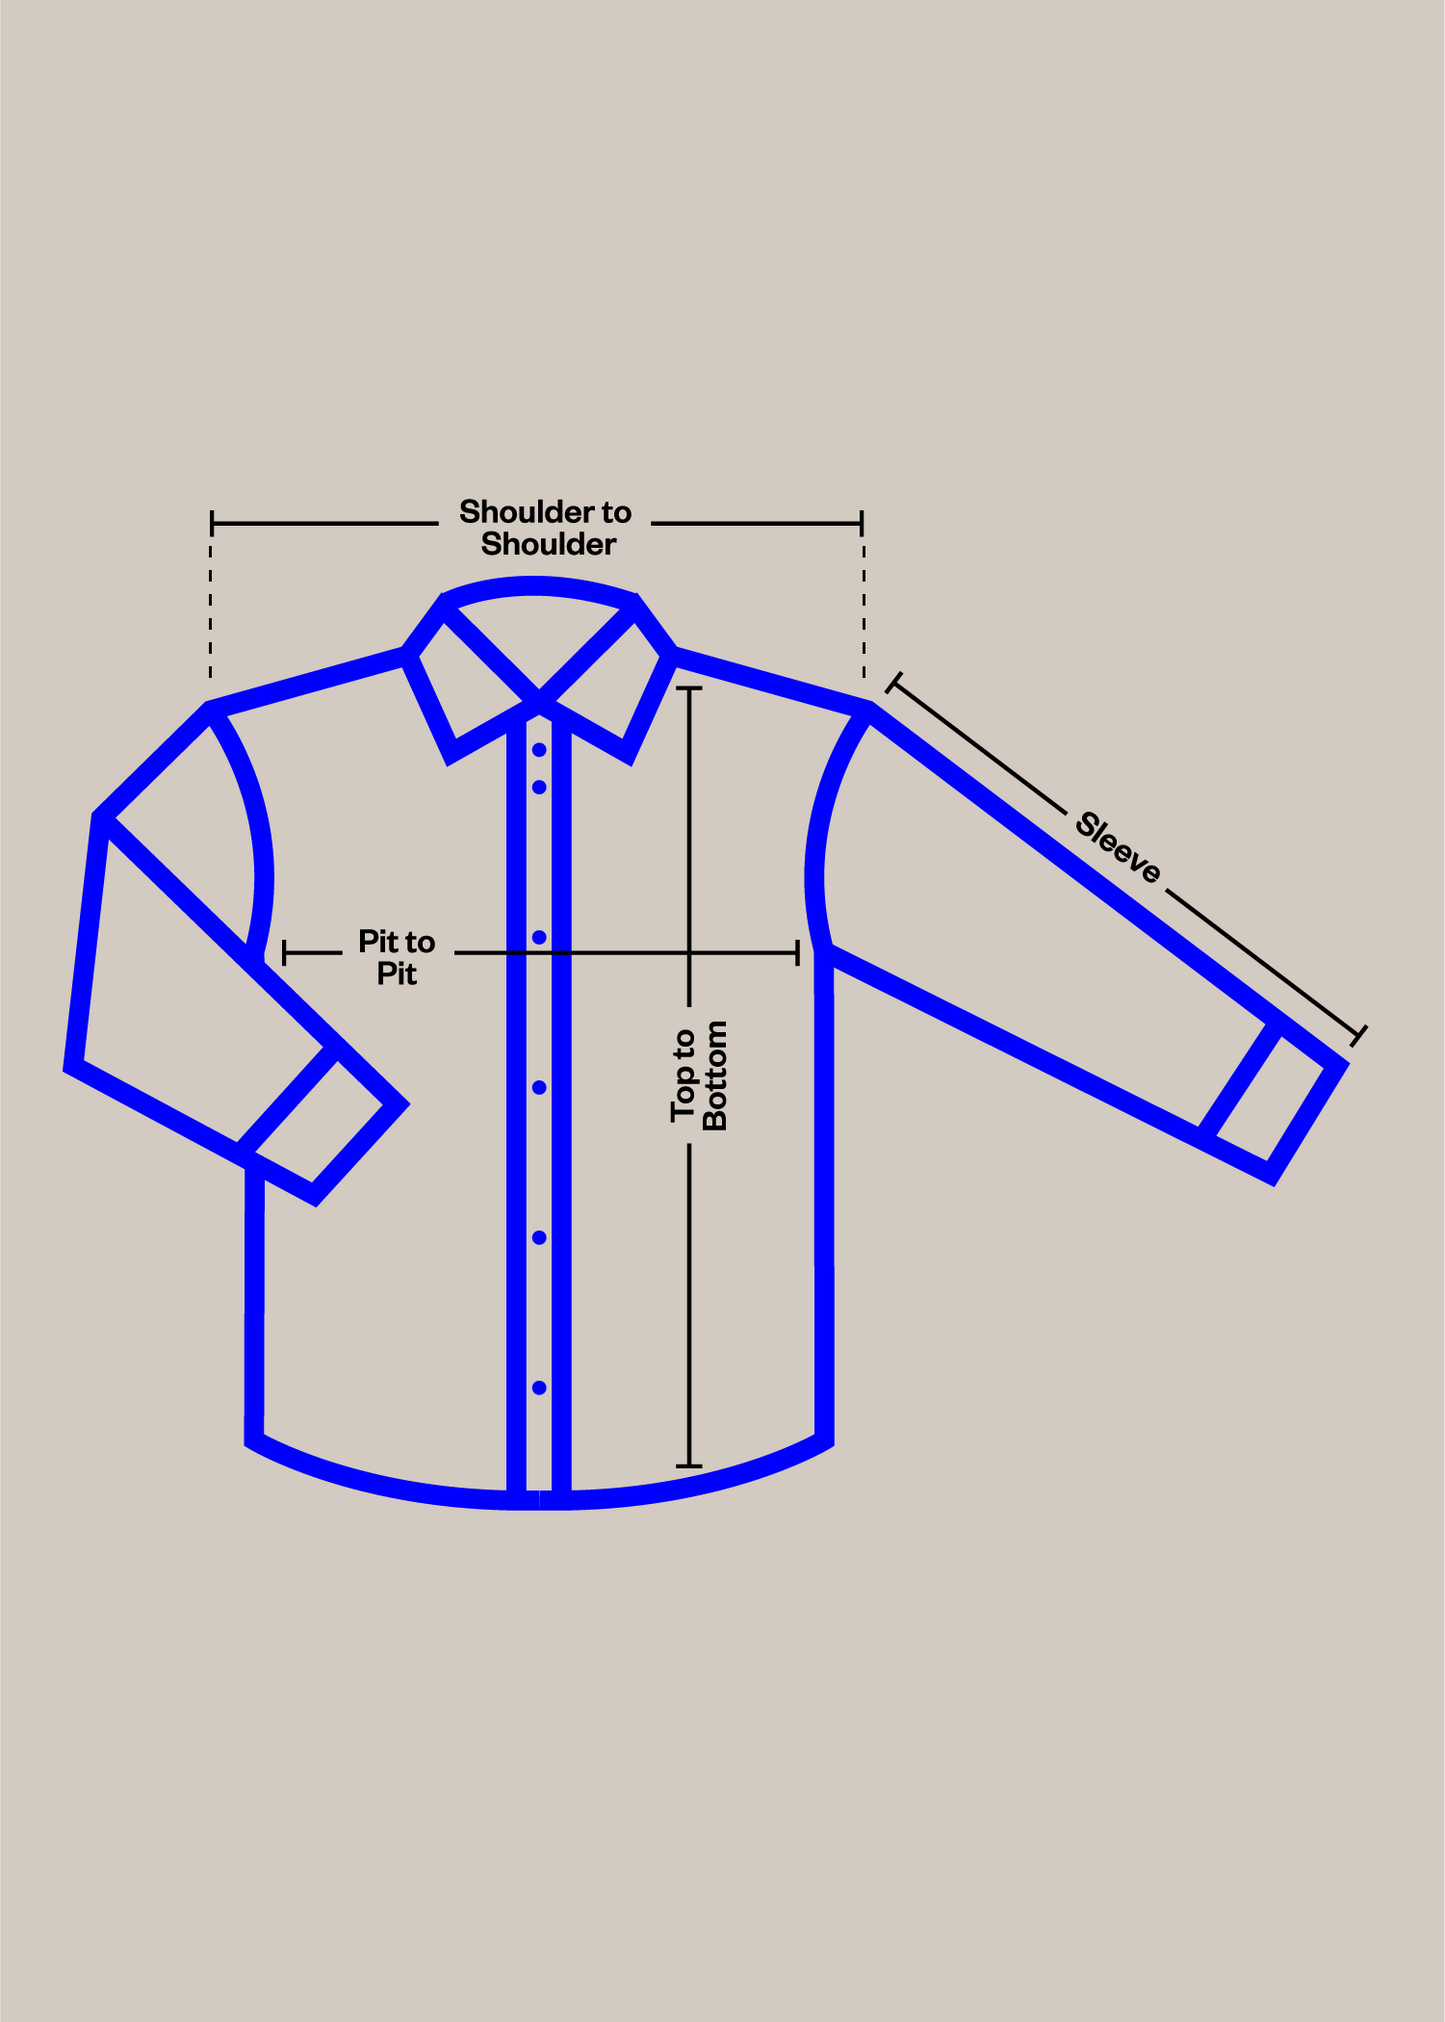 1980s French Workwear Chore Jacket Size XS/S